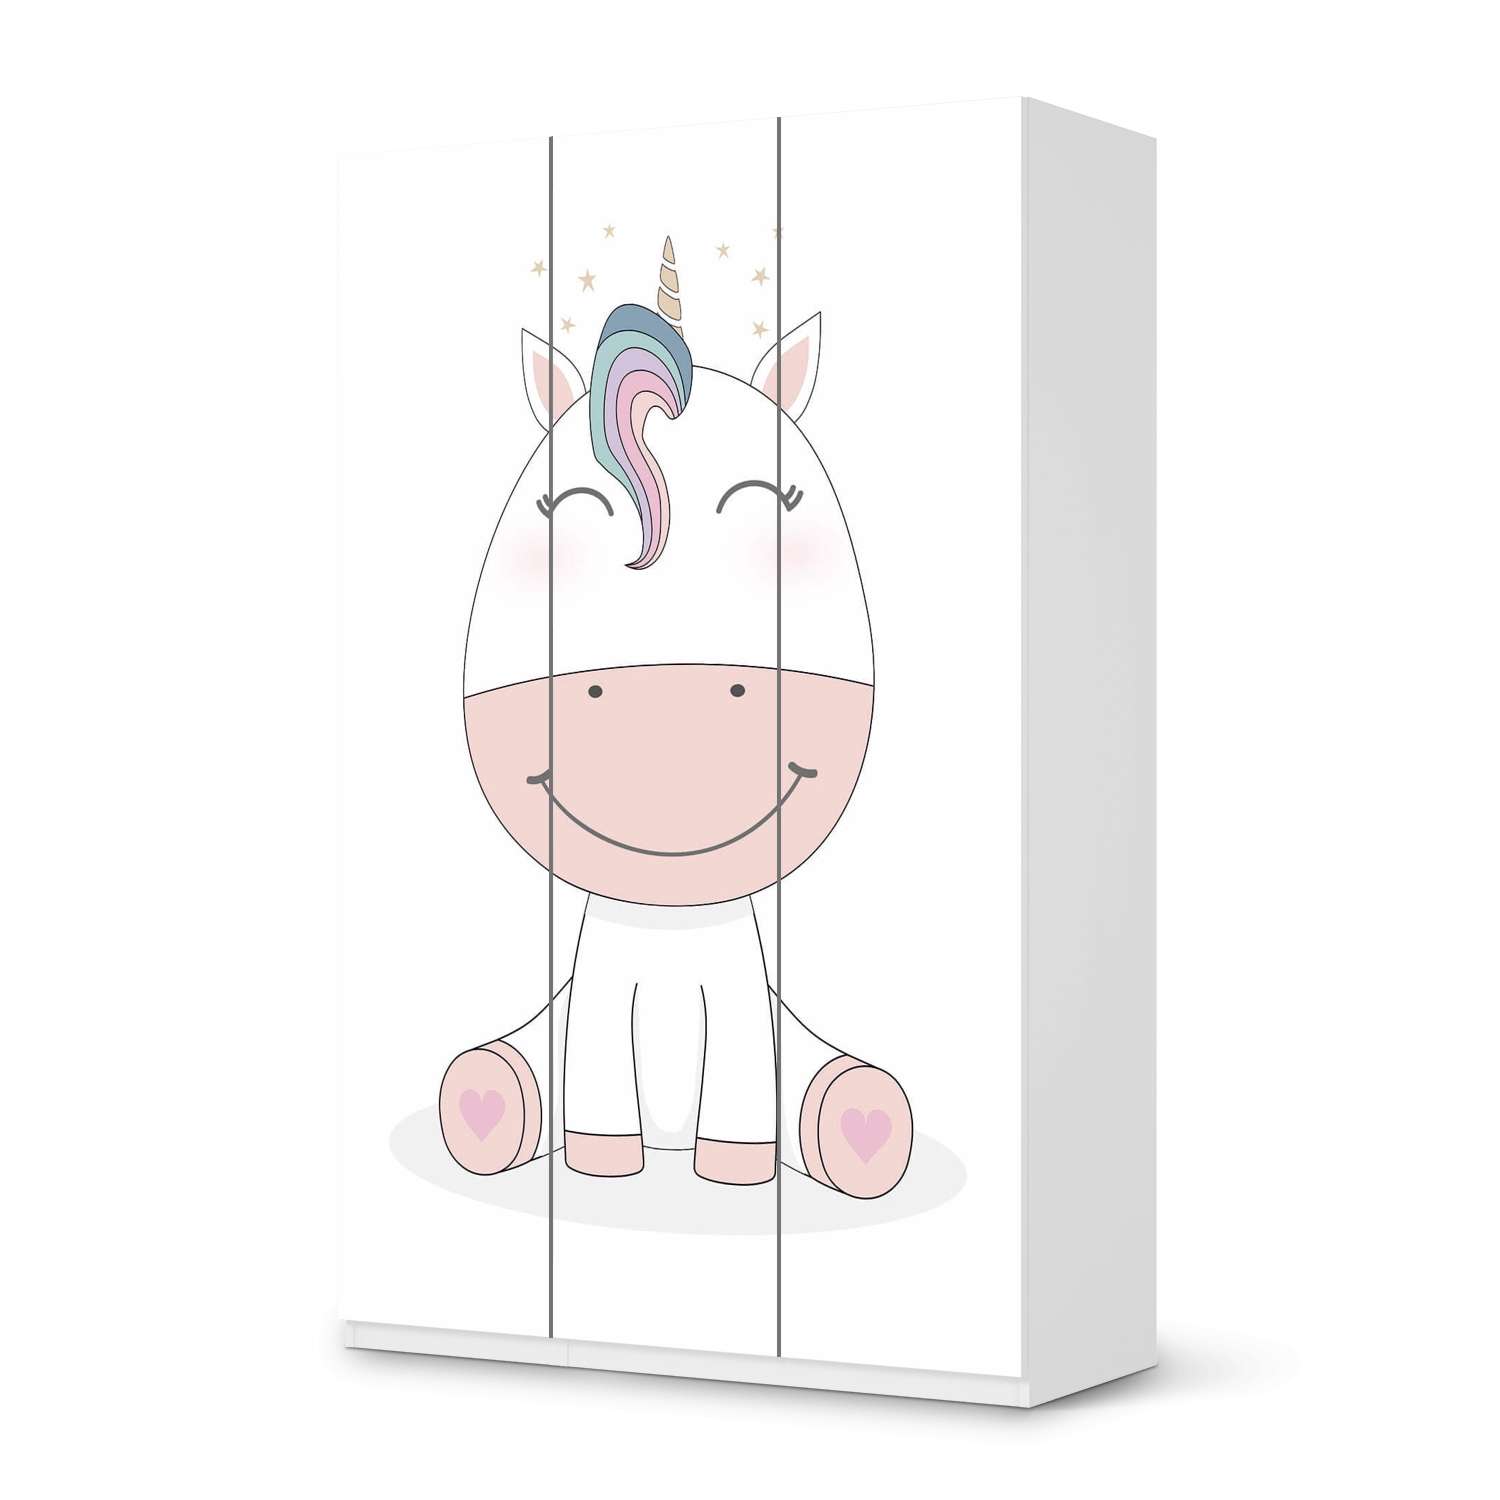 Selbstklebende Folie IKEA Pax Schrank 236 cm H?he - 3 T?ren - Design: Baby Unicorn von creatisto